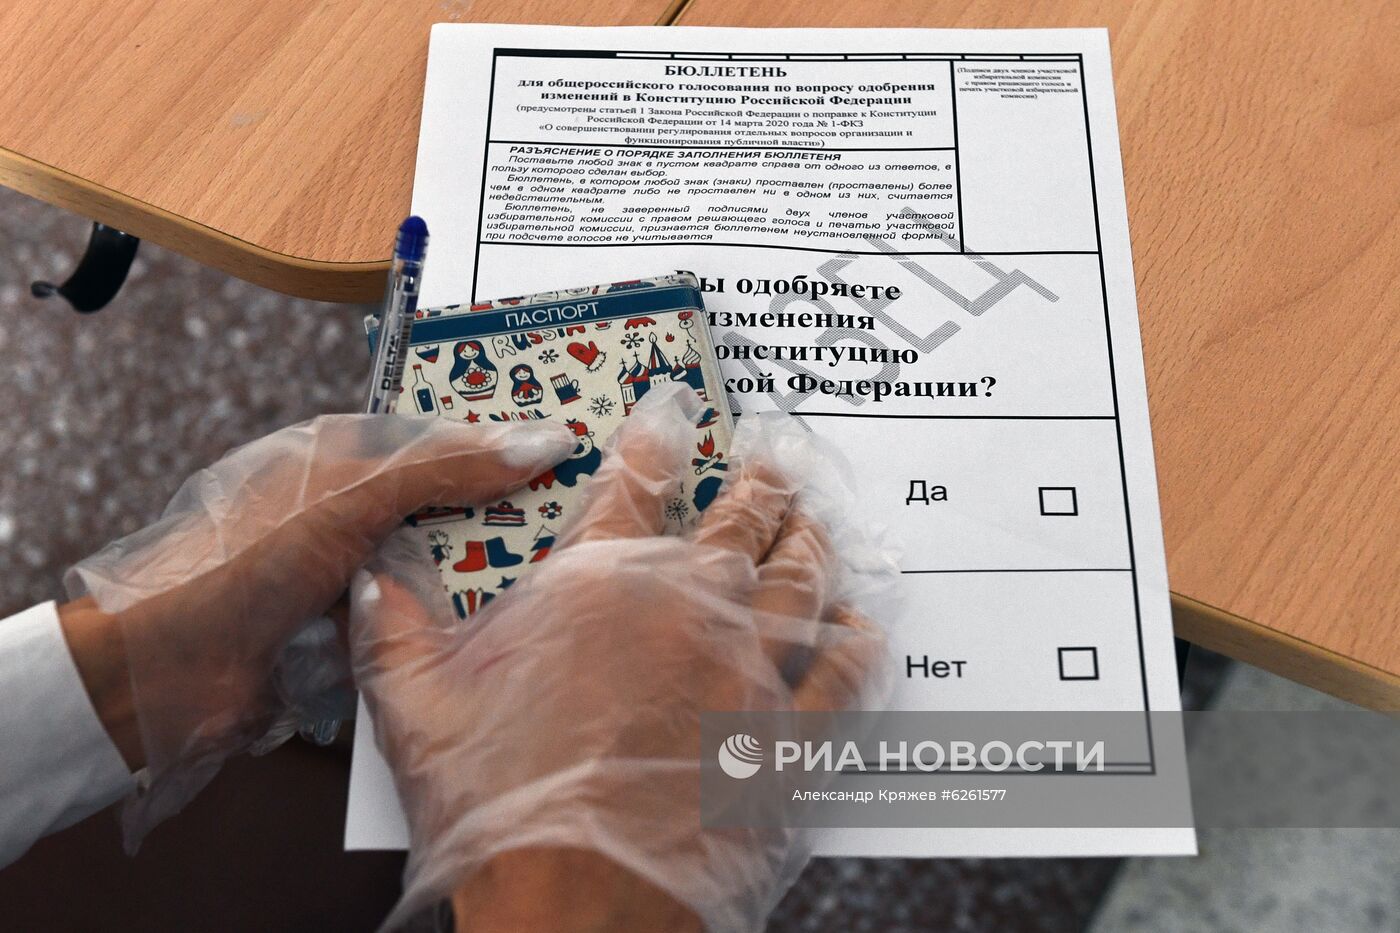  Участок для голосования по поправкам в Конституцию в Новосибирске